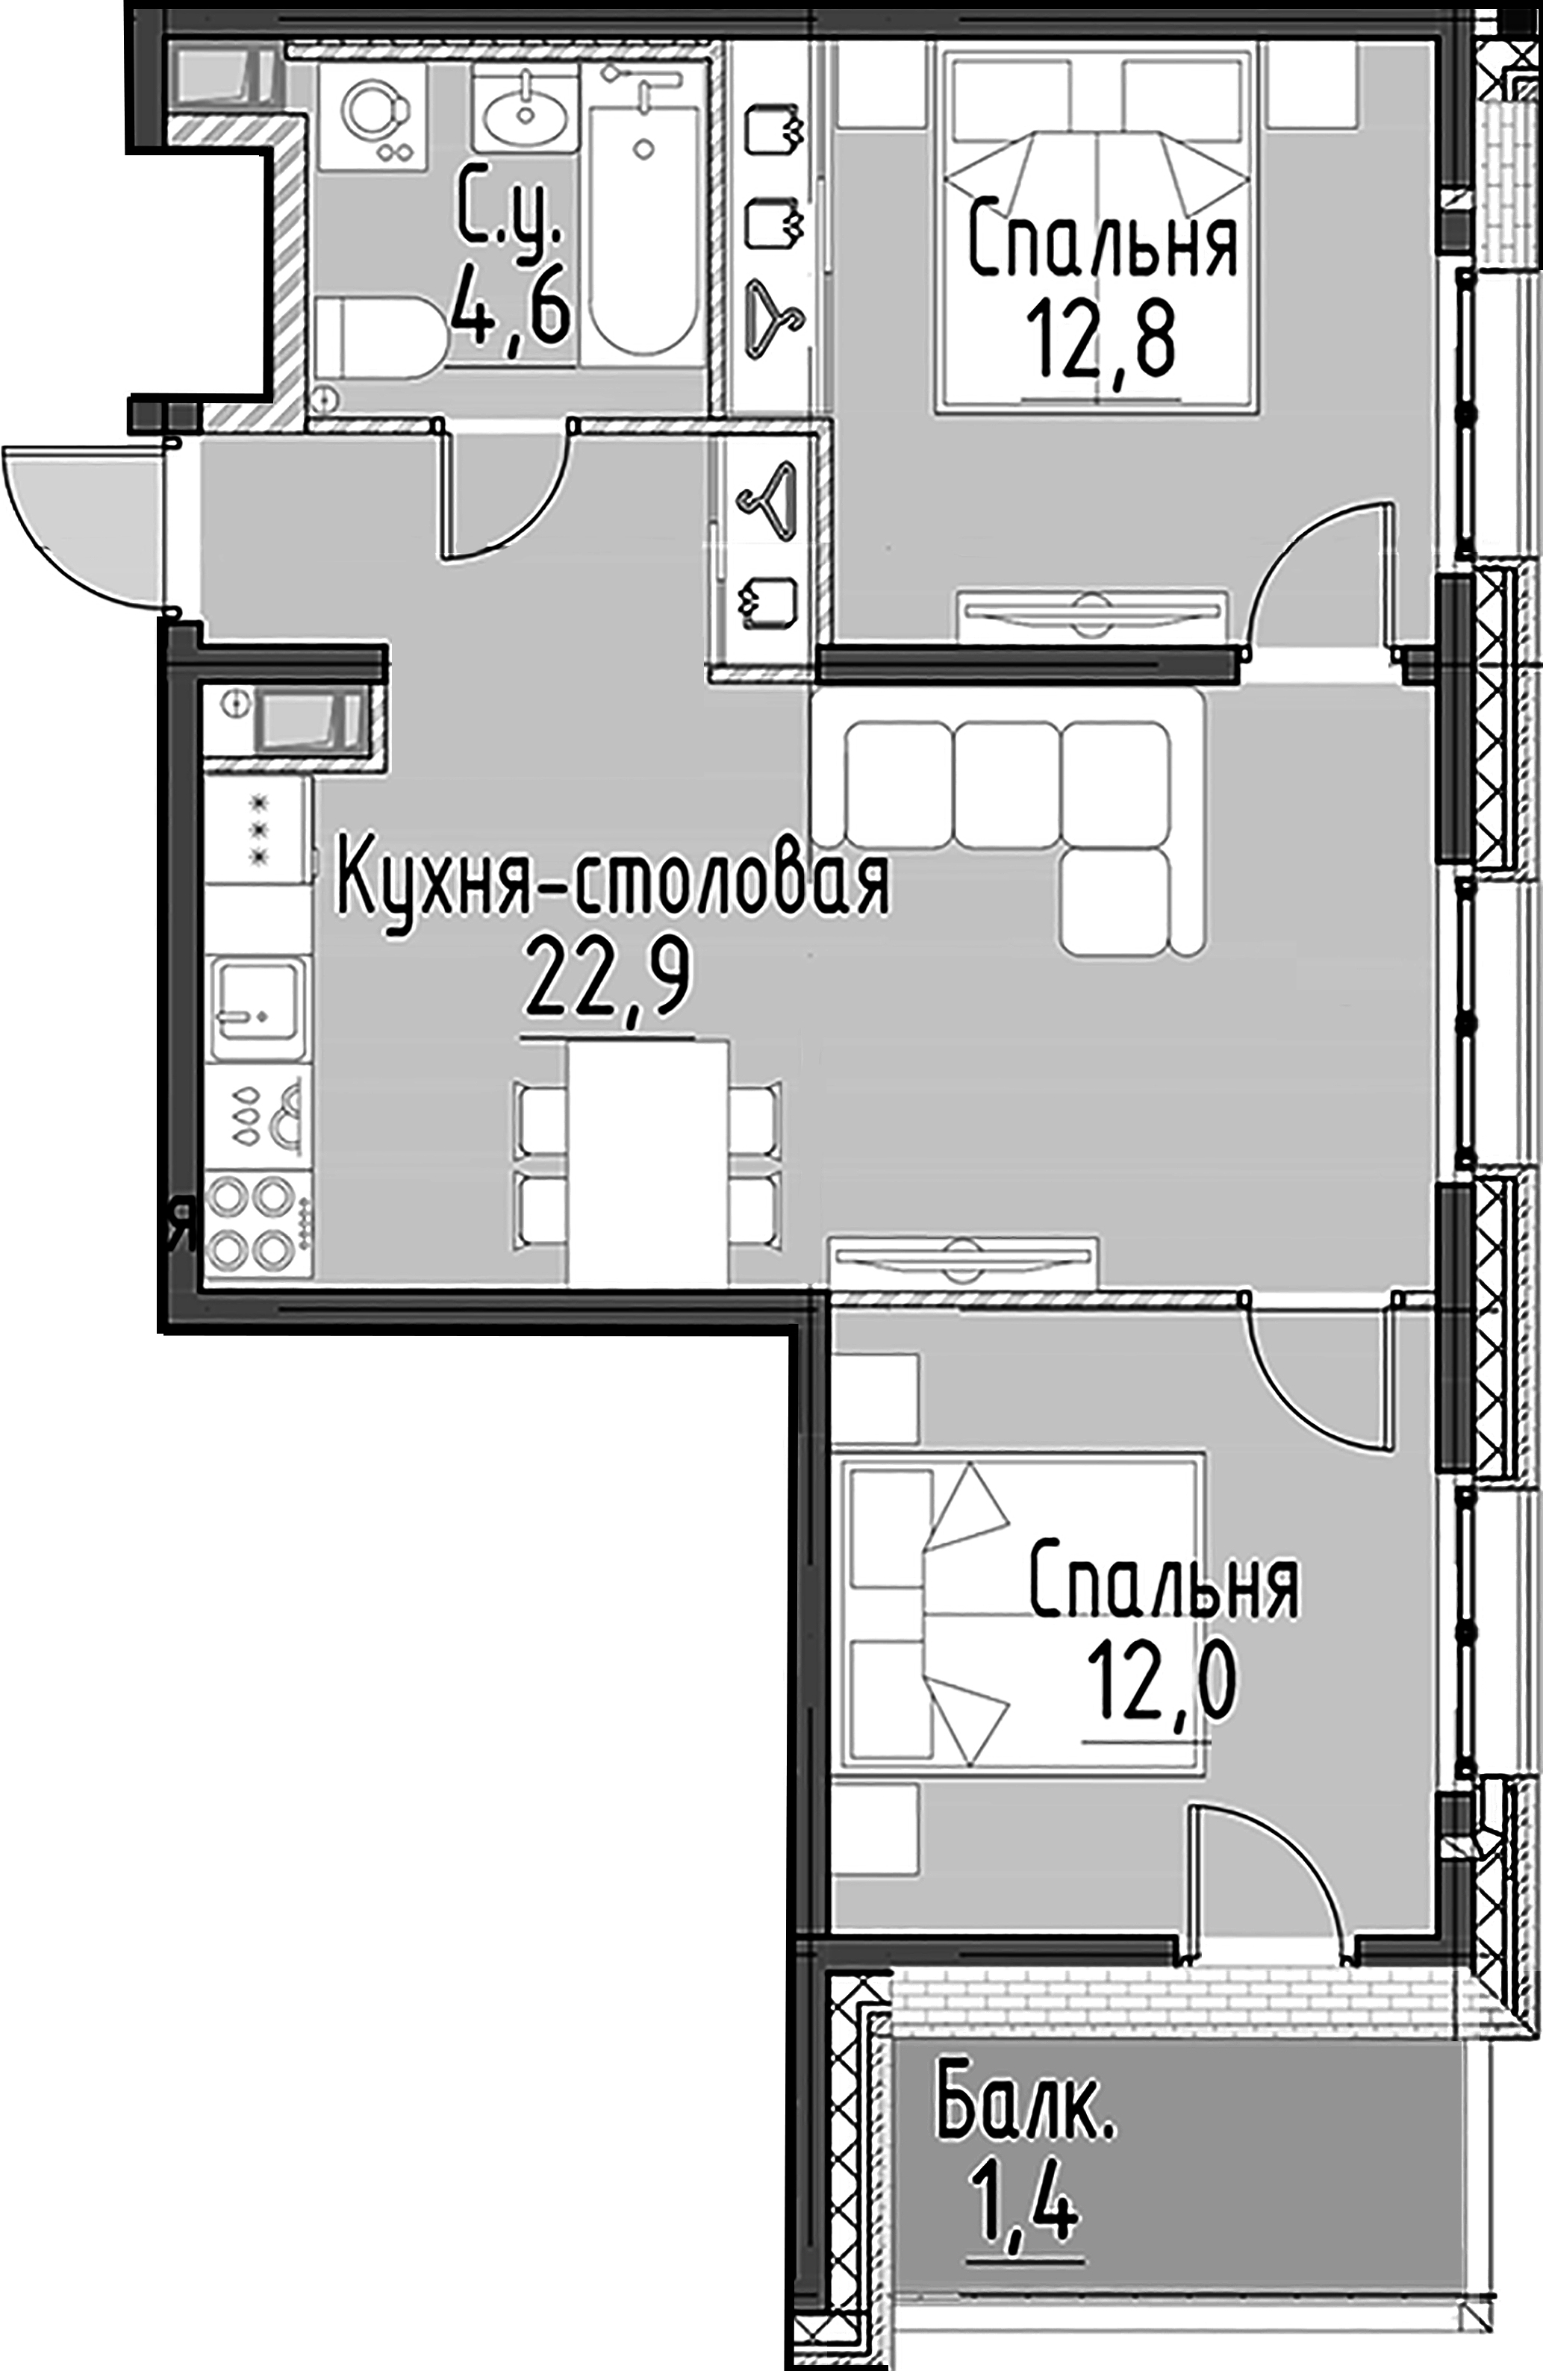 2-комнатная квартира  №112 в Моисеенко, 10: 56.8 м², этаж 4 - купить в Санкт-Петербурге